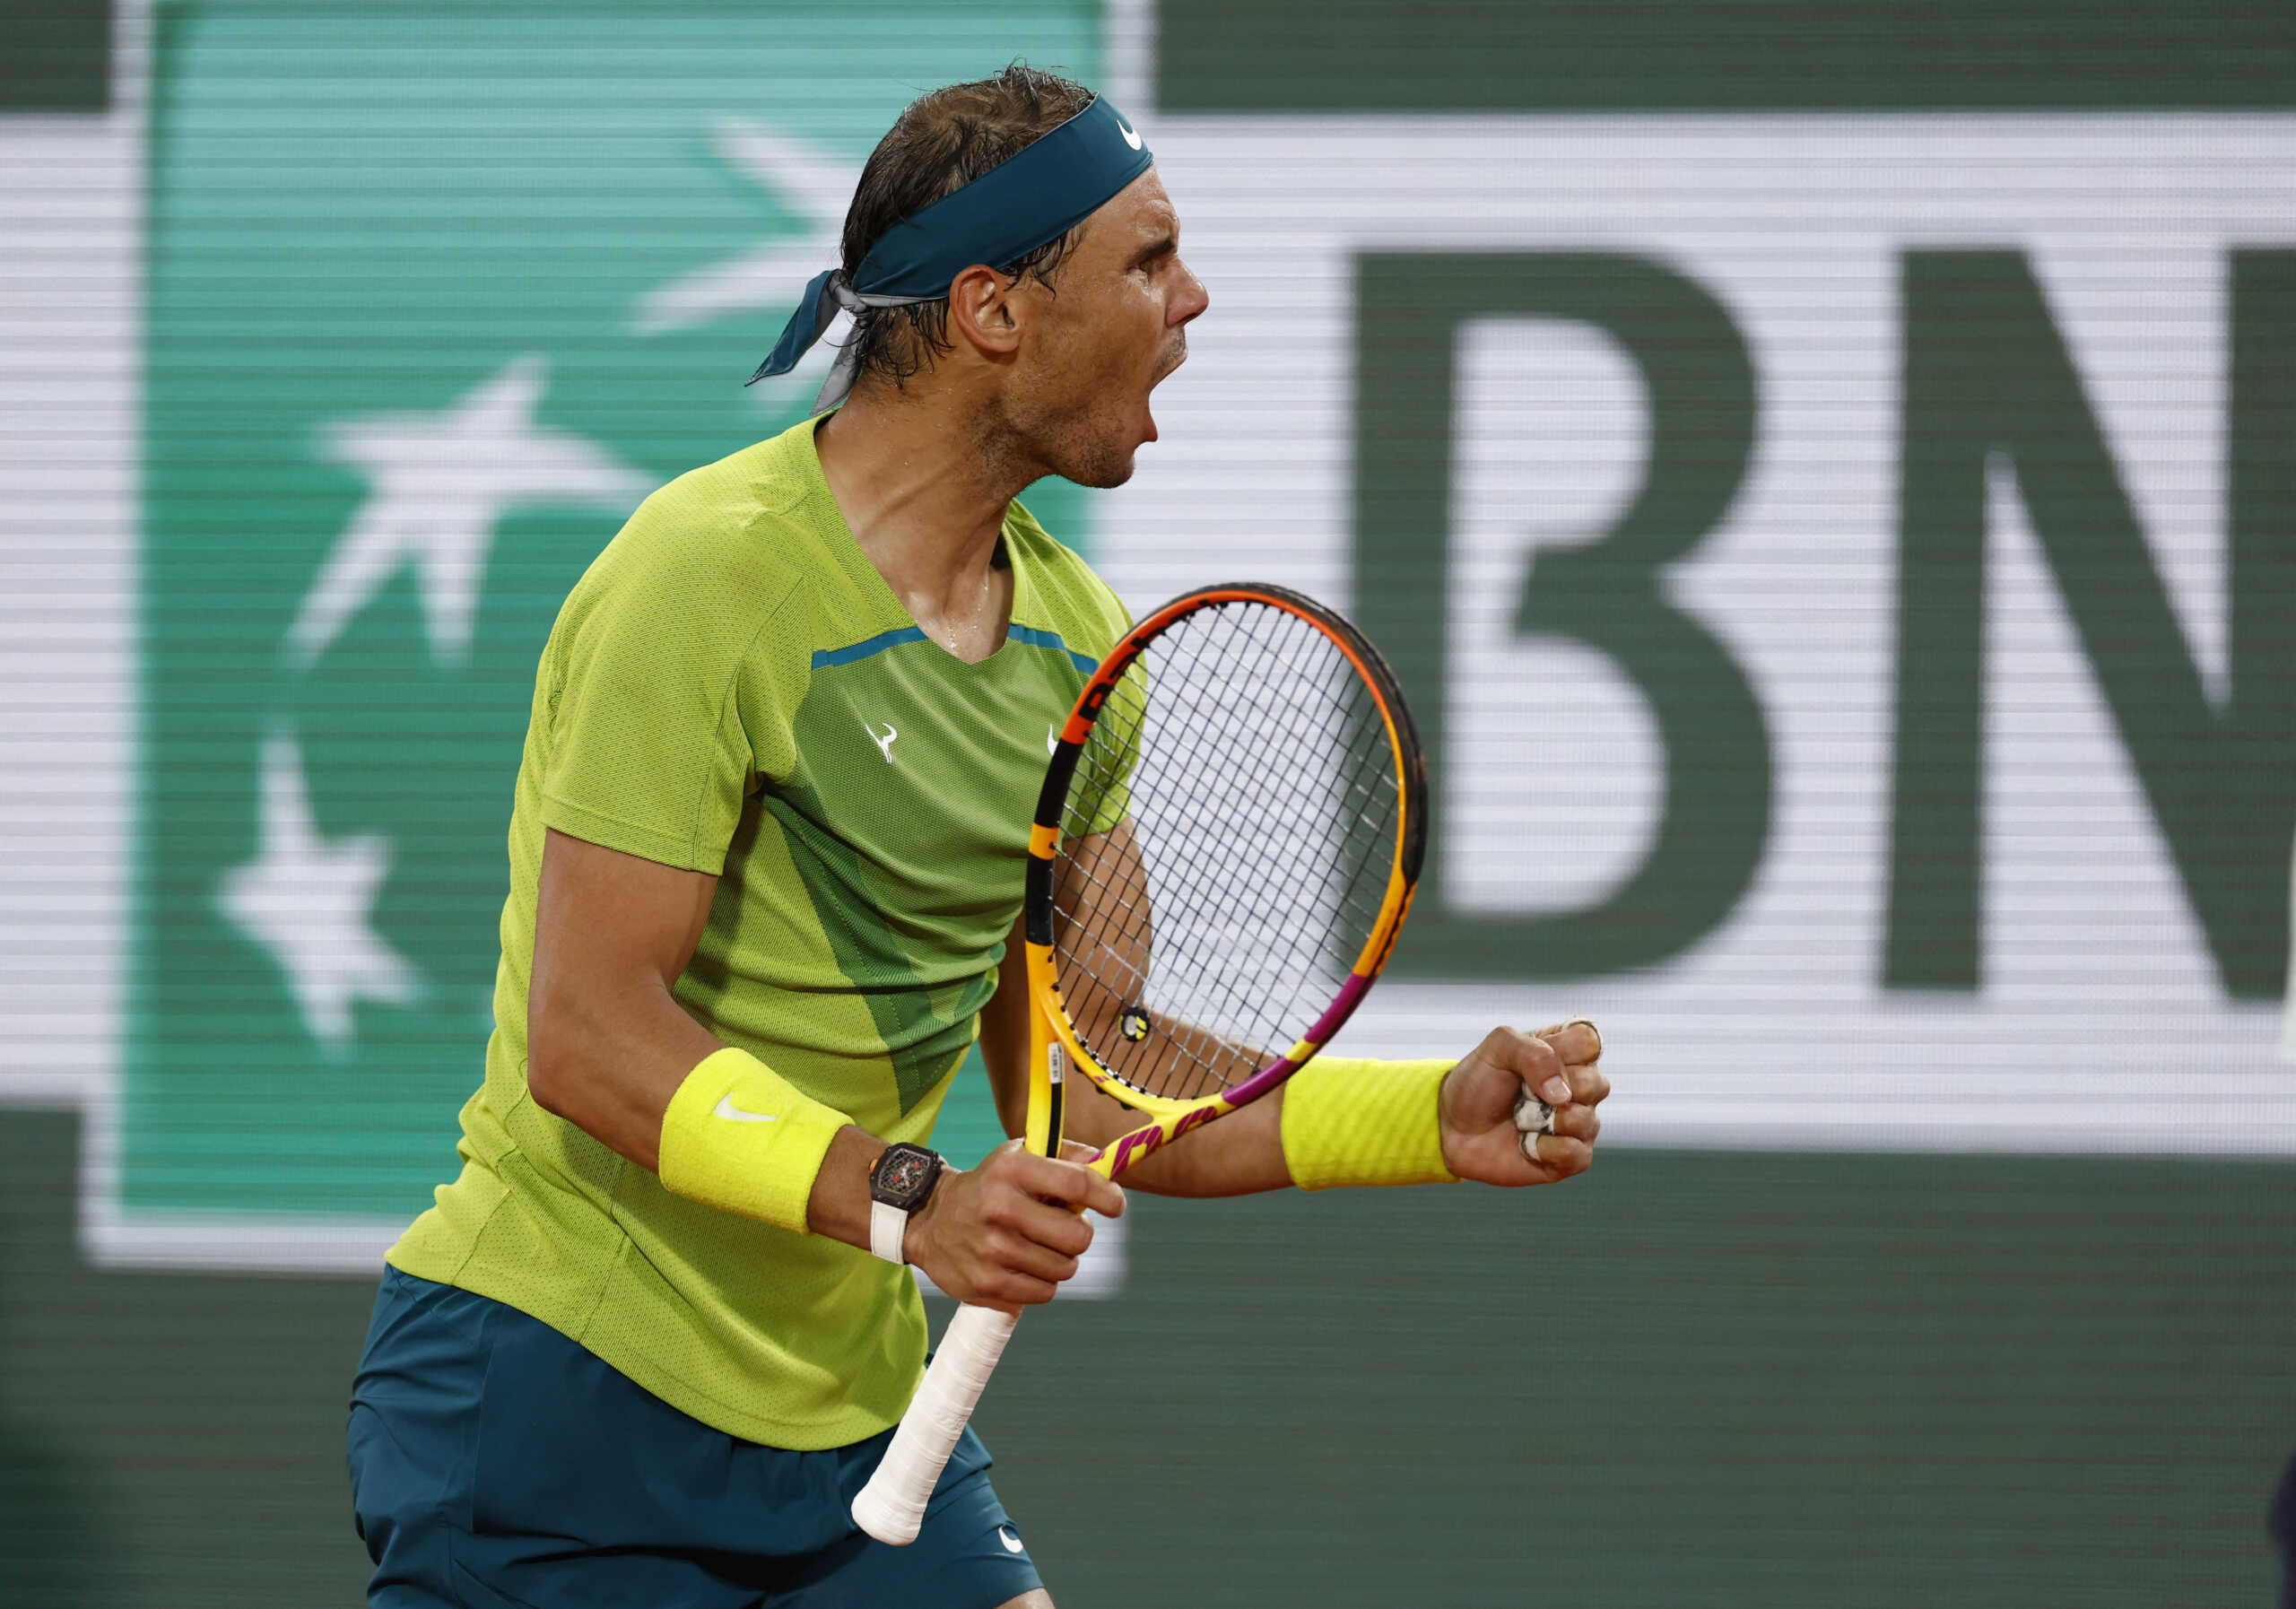 Ράφα Ναδάλ: Στον τελικό του Roland Garros μετά την εγκατάλειψη του Ζβέρεφ, πάει ολοταχώς για το 22ο Major τίτλο του